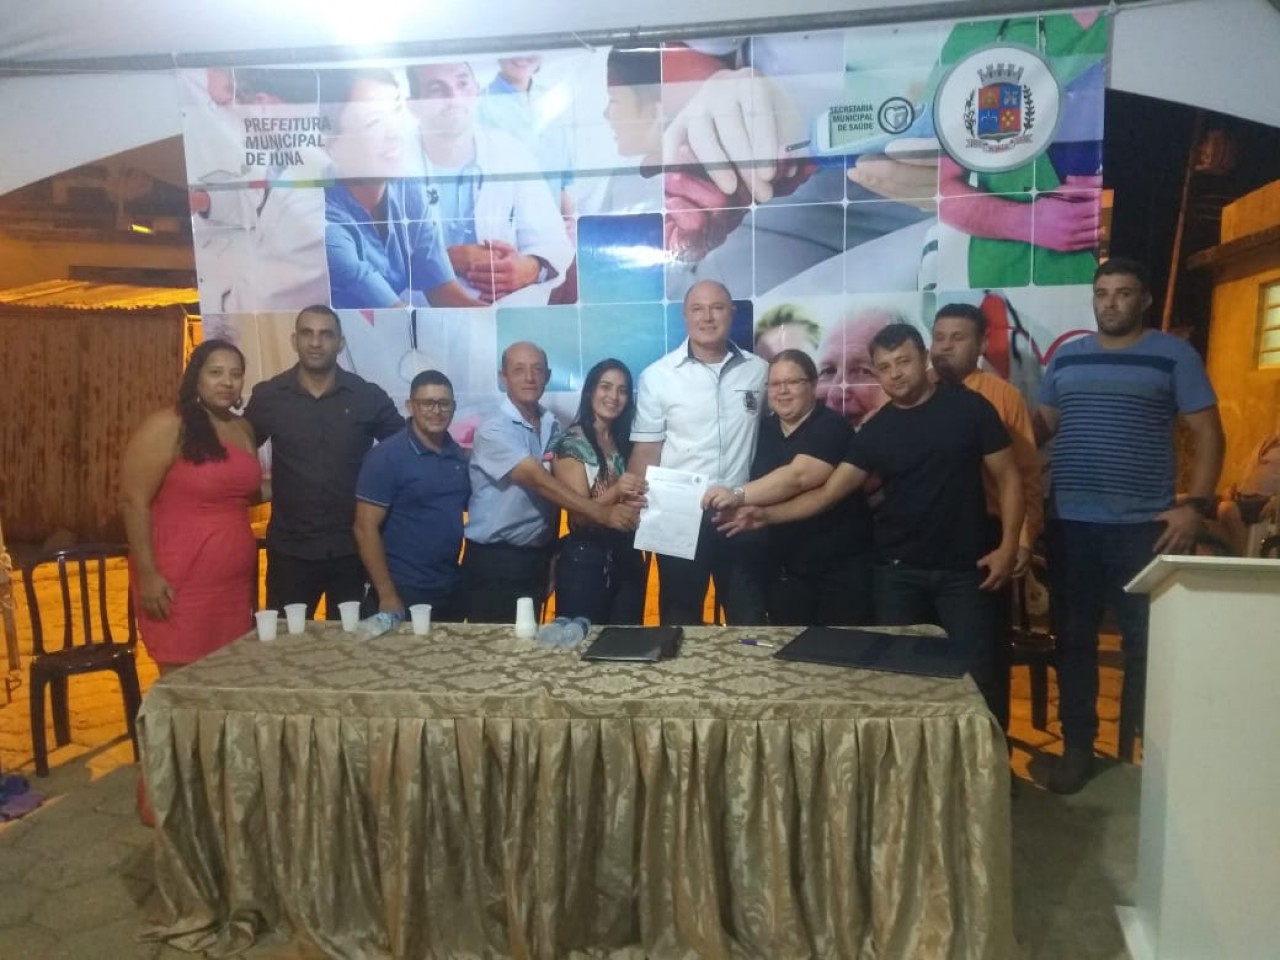 Liberada a Ordem de Serviço para a construção da Unidade Básica de Saúde do bairro Quilombo